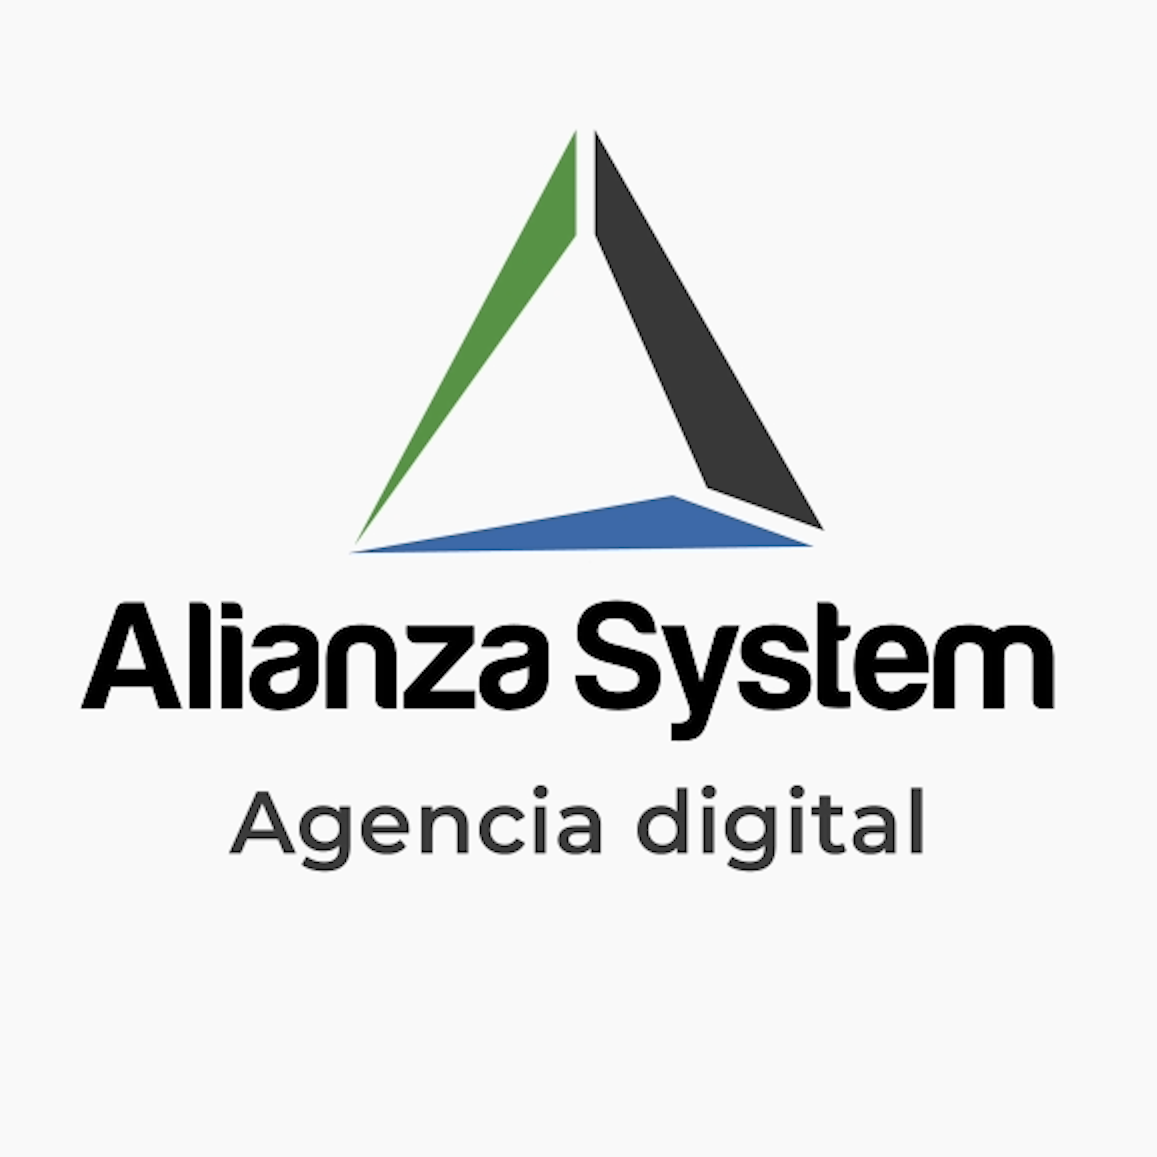 (c) Alianzasystem.com